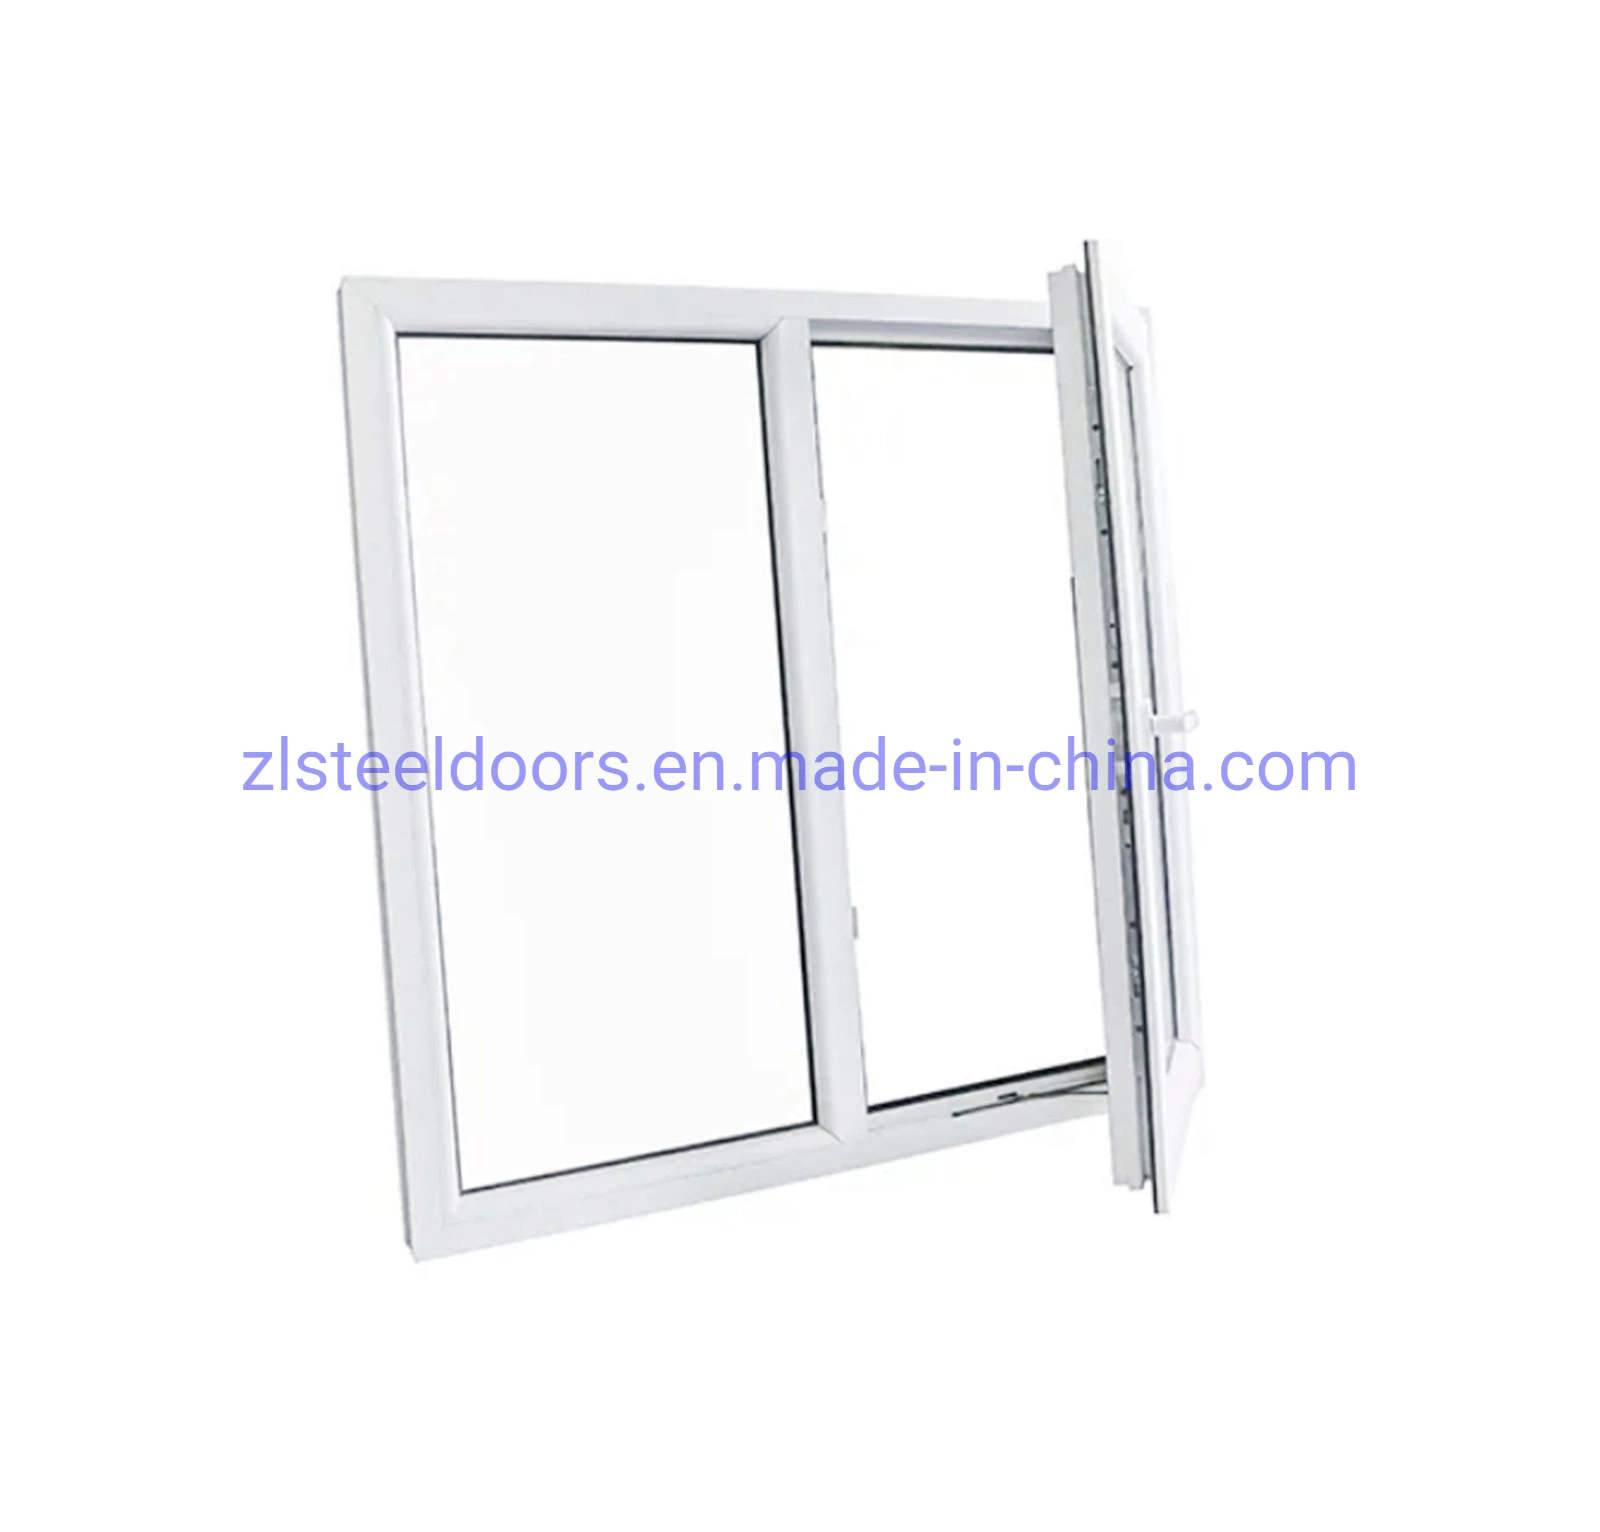 PVC Schiebefenster Gebäude Bildschirm Fenster für Türen und Fenster Hersteller Fabrik